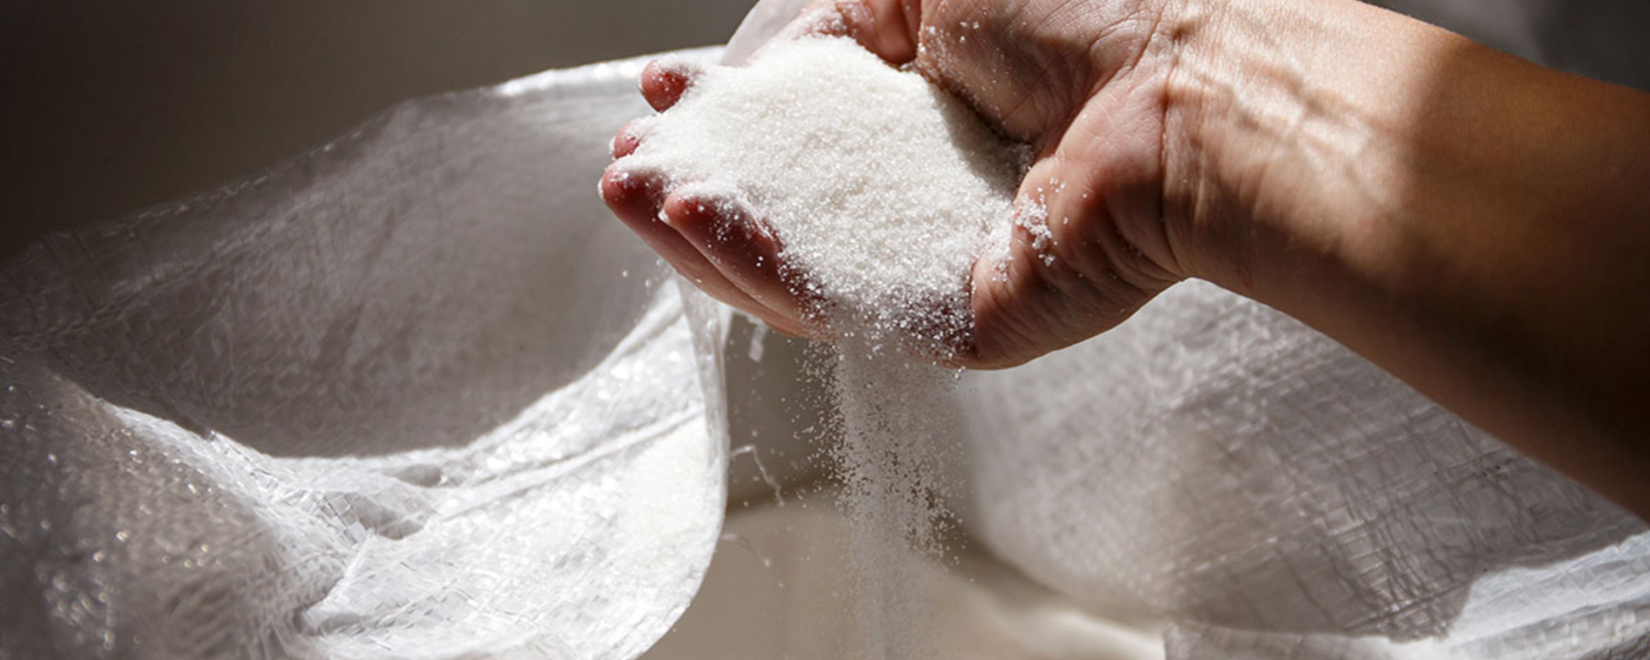 Цены на сахар растут на фоне укрепления бразильского реала